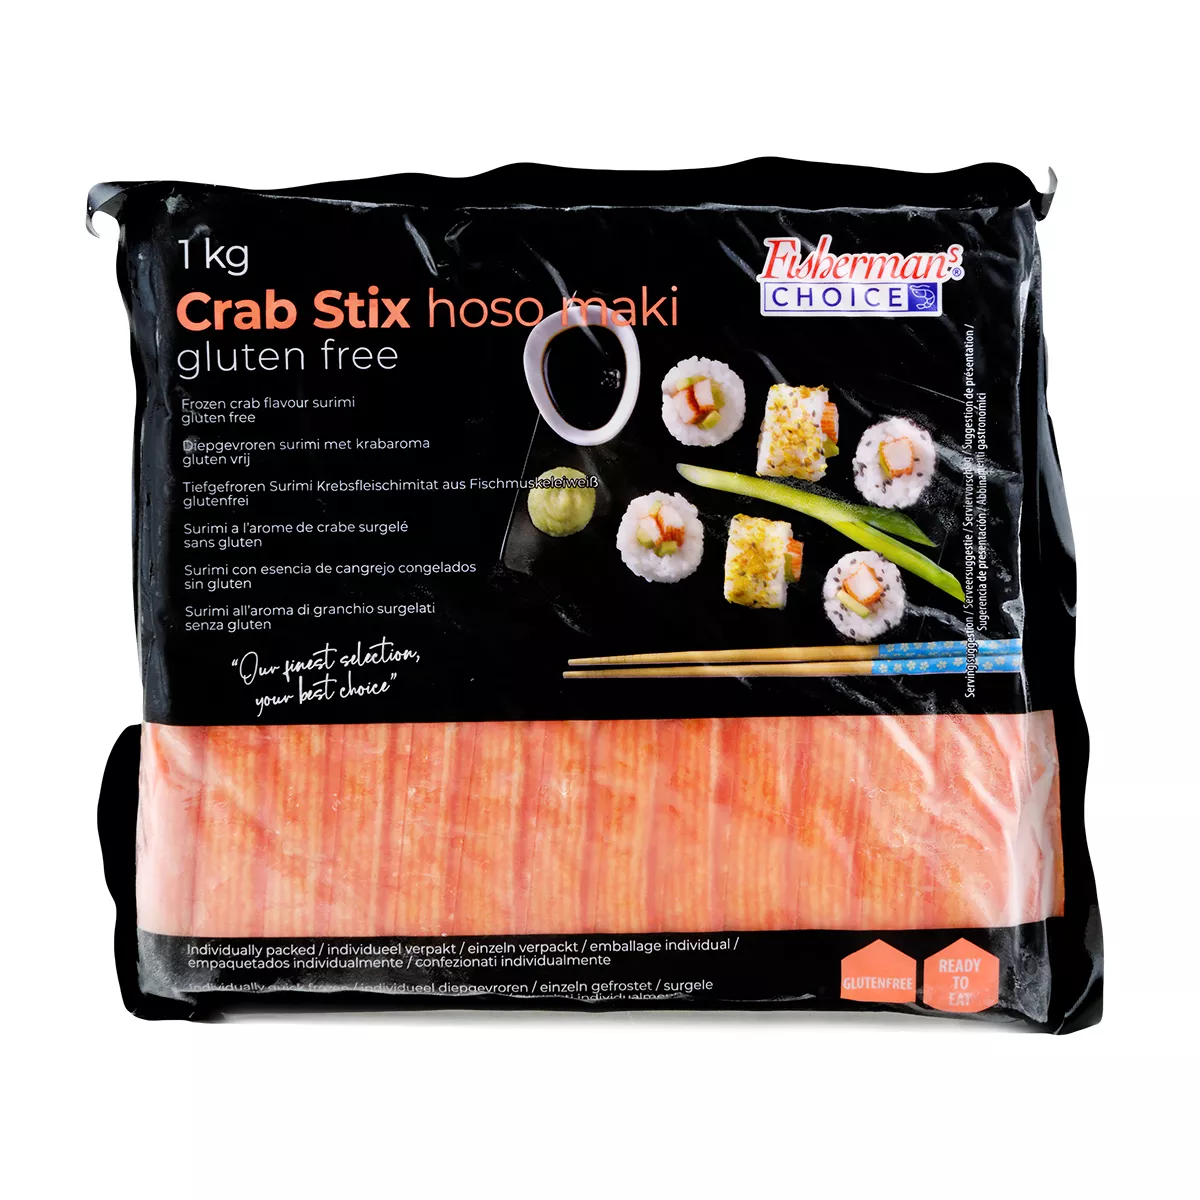 Carne de crab Surimi 18cm FISHERMAN'S CHOICE 1kg, [],asianfood.ro